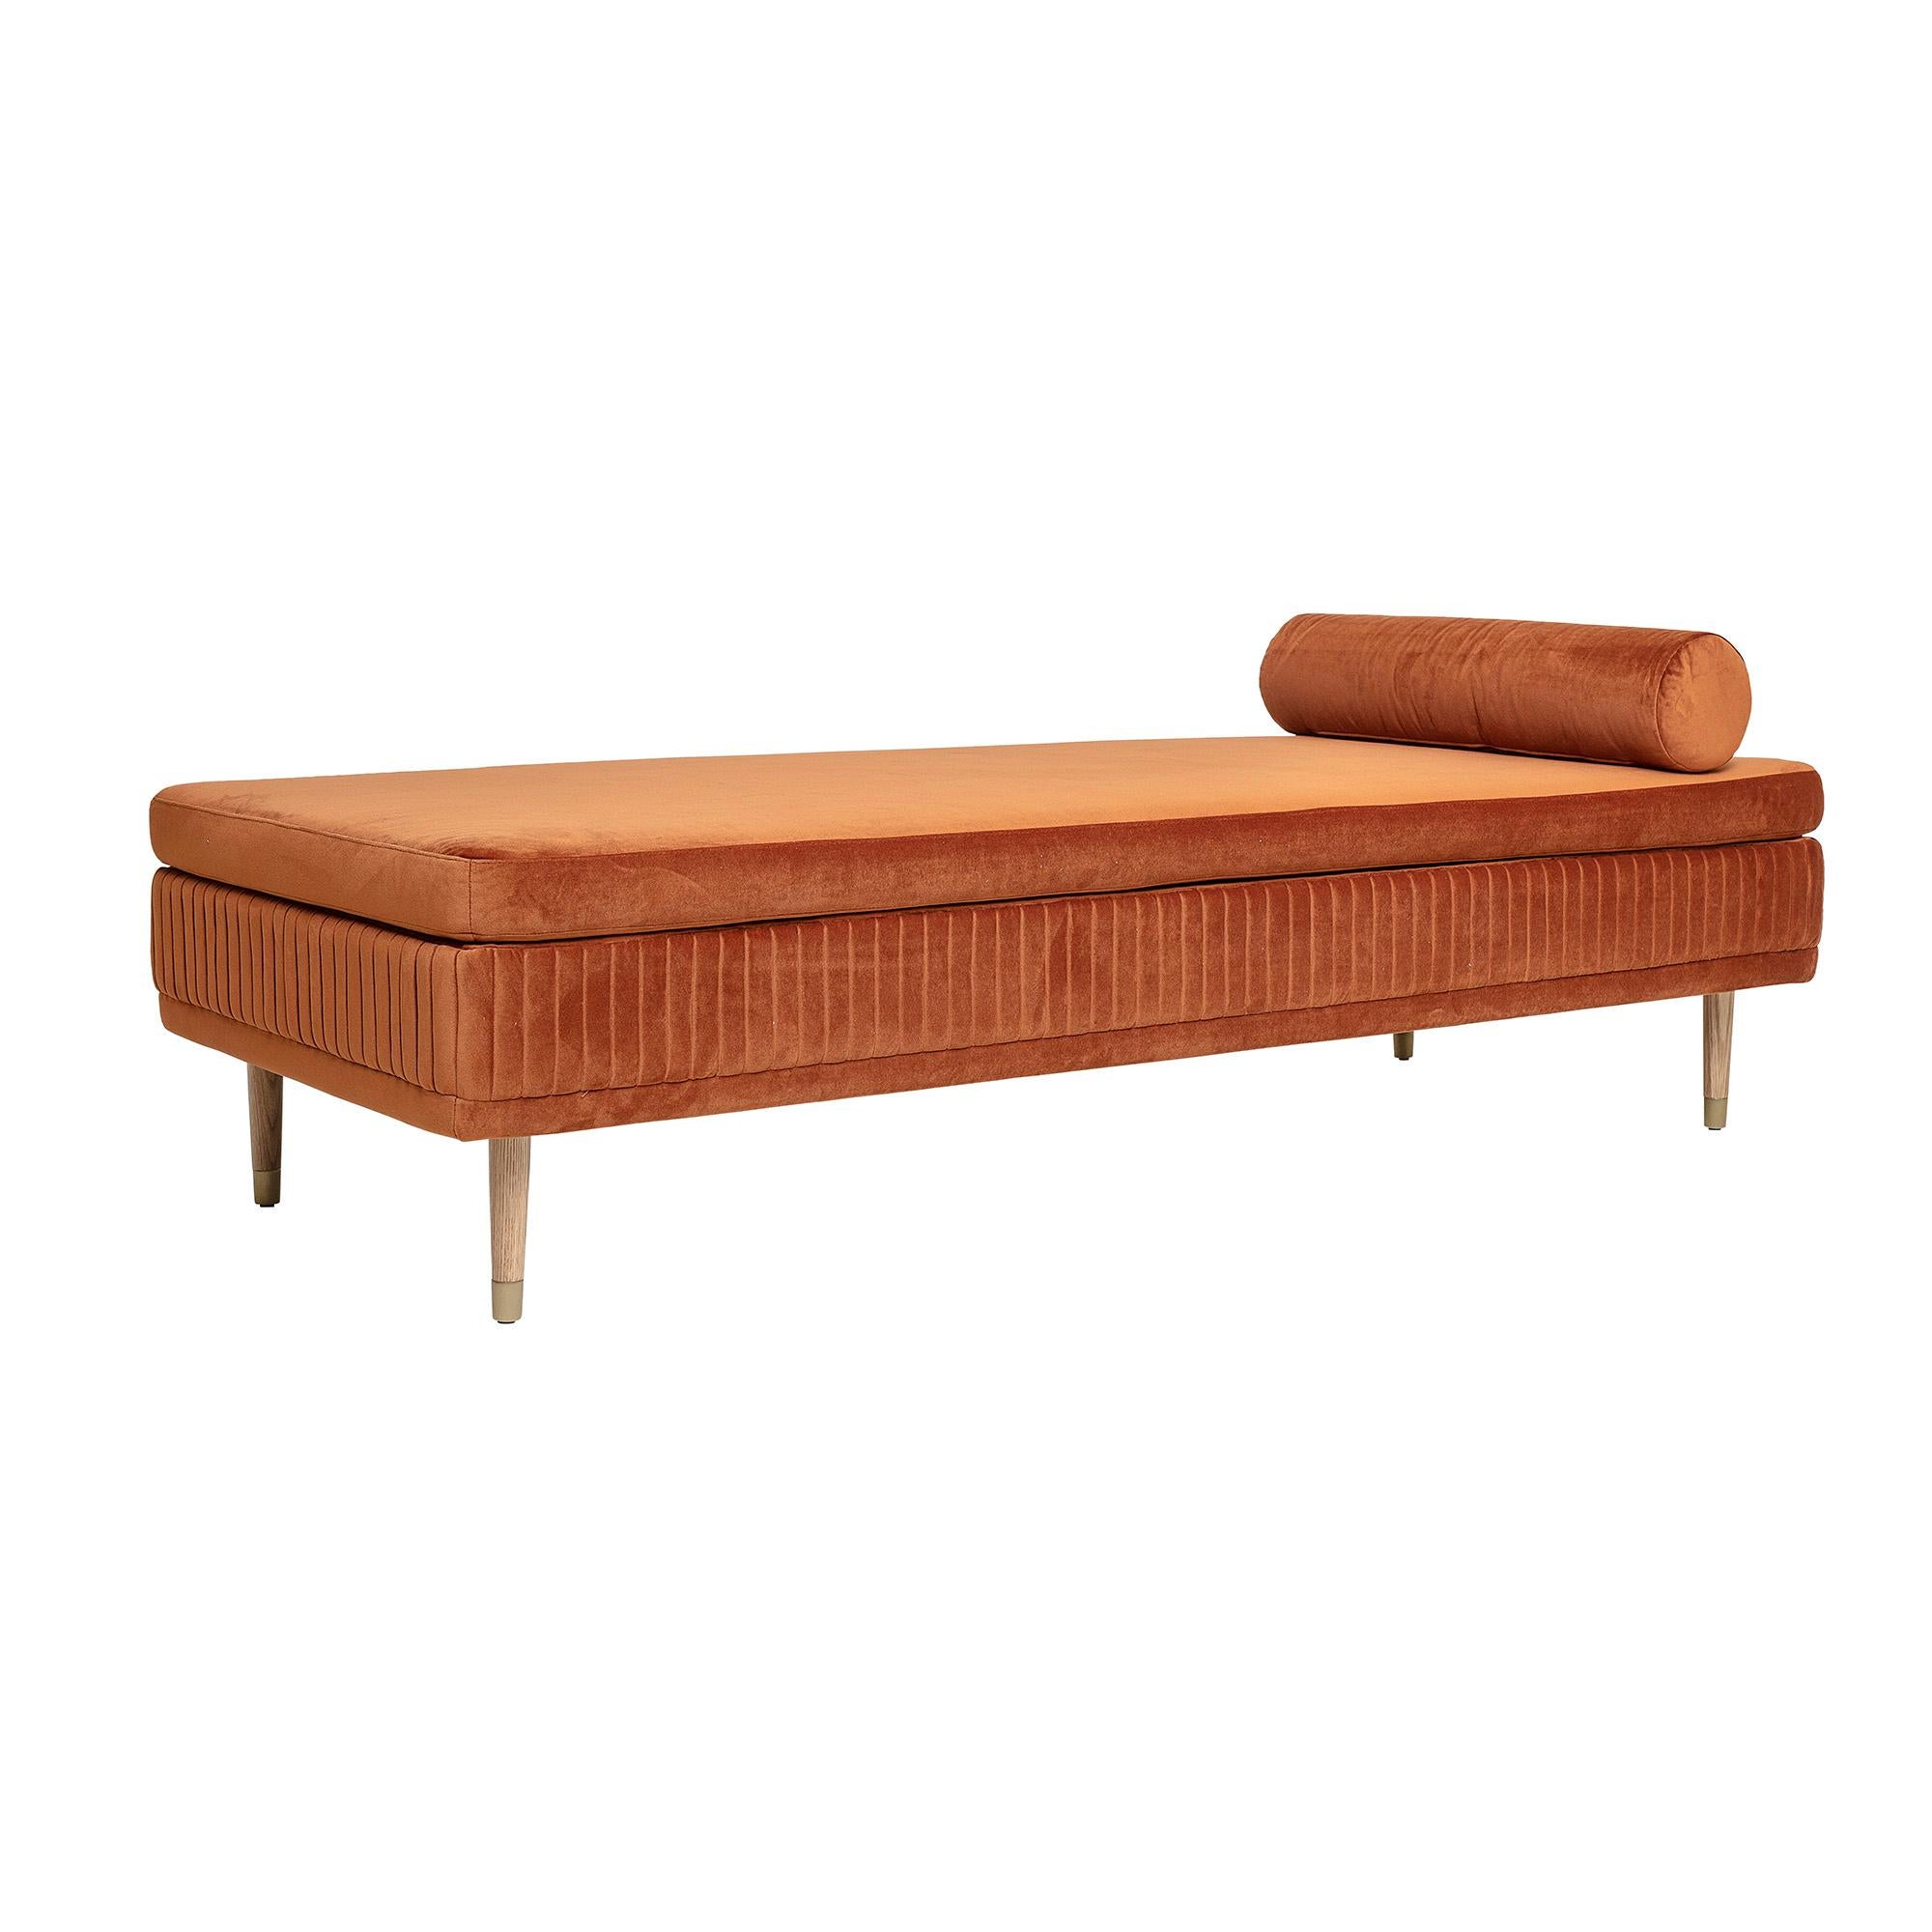 Il s'agit d'un lit de jour au design moderne Scandinavian avec un revêtement en velours brun bronzé sur un cadre en bois de chêne avec des détails de pieds en métal couleur laiton. Le tour de la tapisserie d'ameublement présente de jolis détails